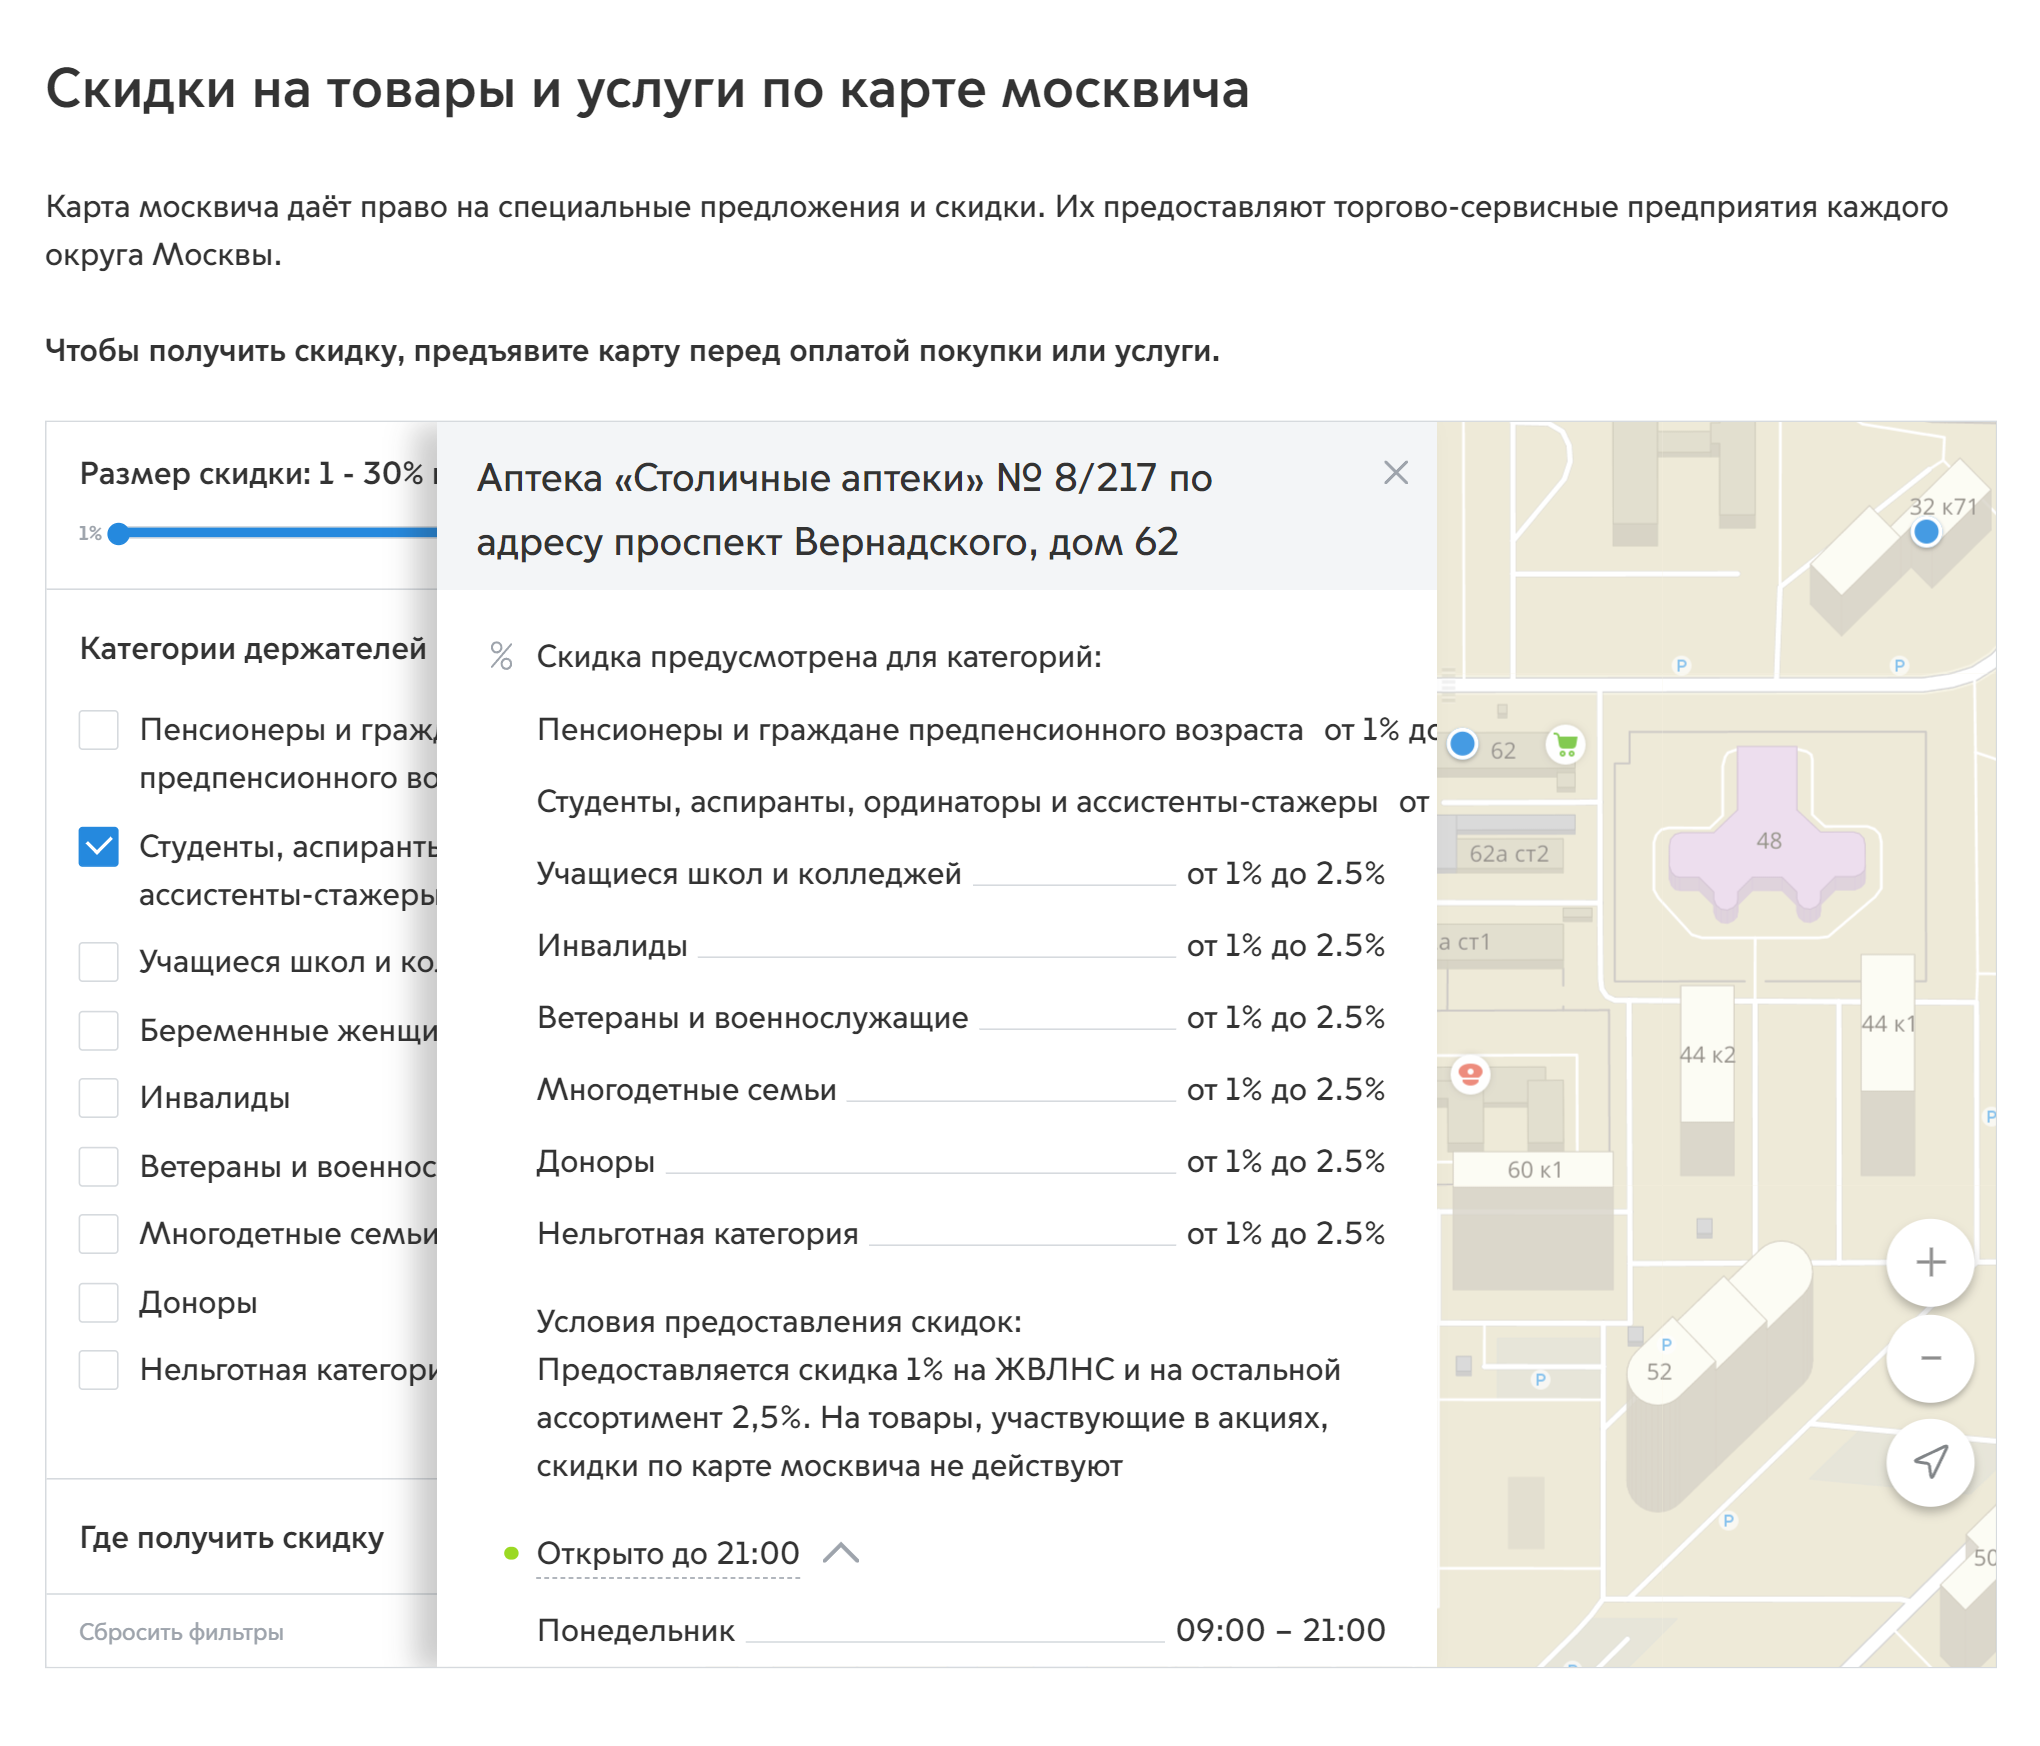 На «Мос-ру» есть удобная карта магазинов и сервисов, где делают скидку по социальной карте. Там же можно посмотреть часы работы и размер этой скидки